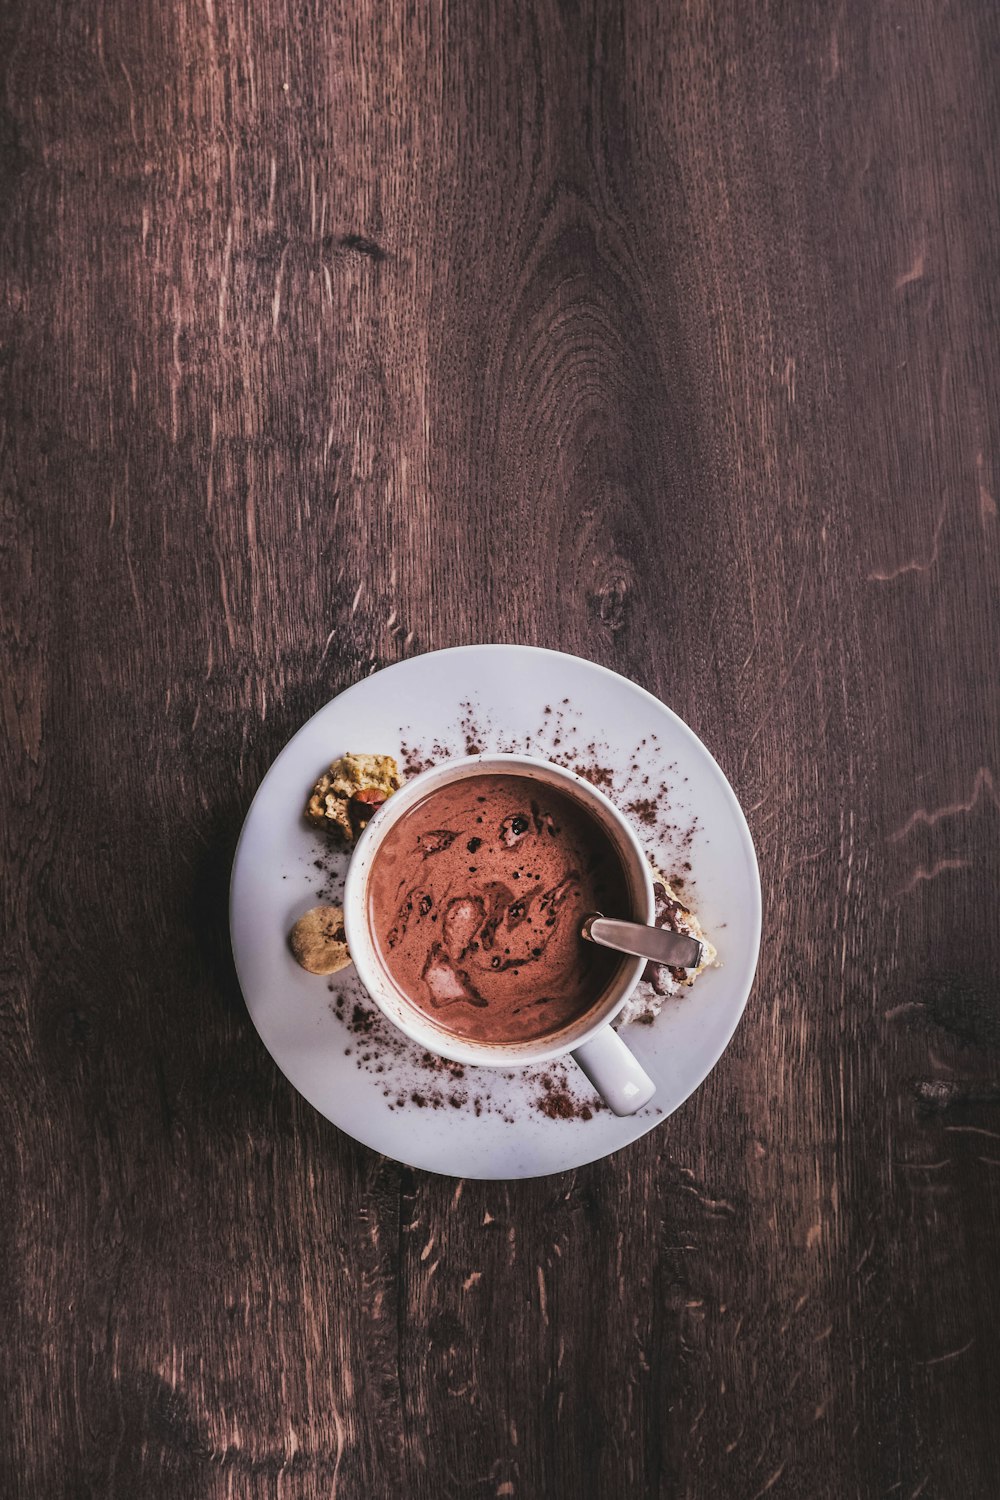 Chocolate coffee